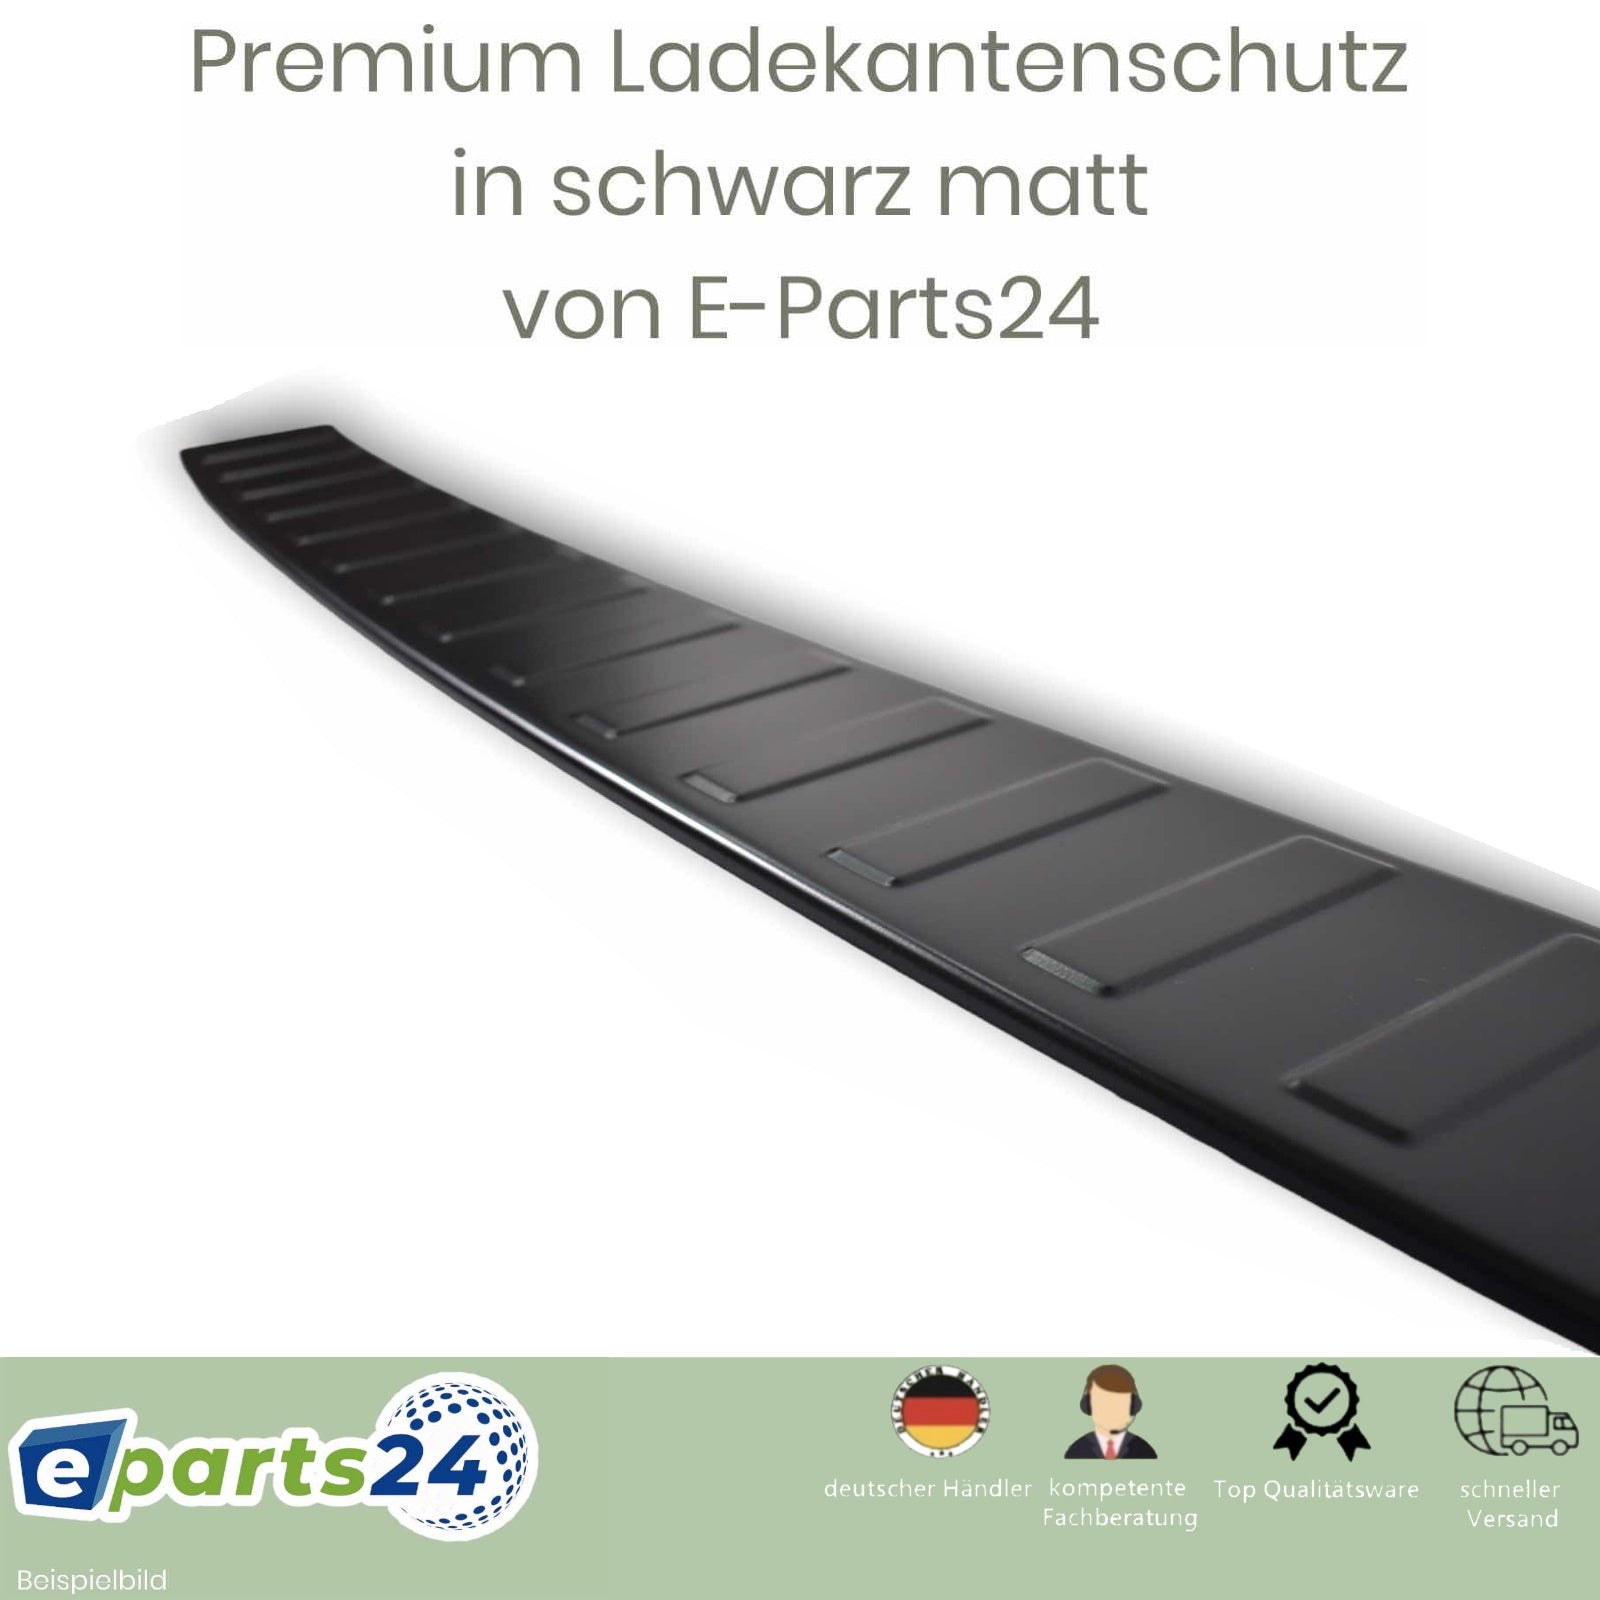 E-Parts24 – Ladekantenschutz Premium 2003-2015 schwarz T5 matt für VW Edelstahl pu